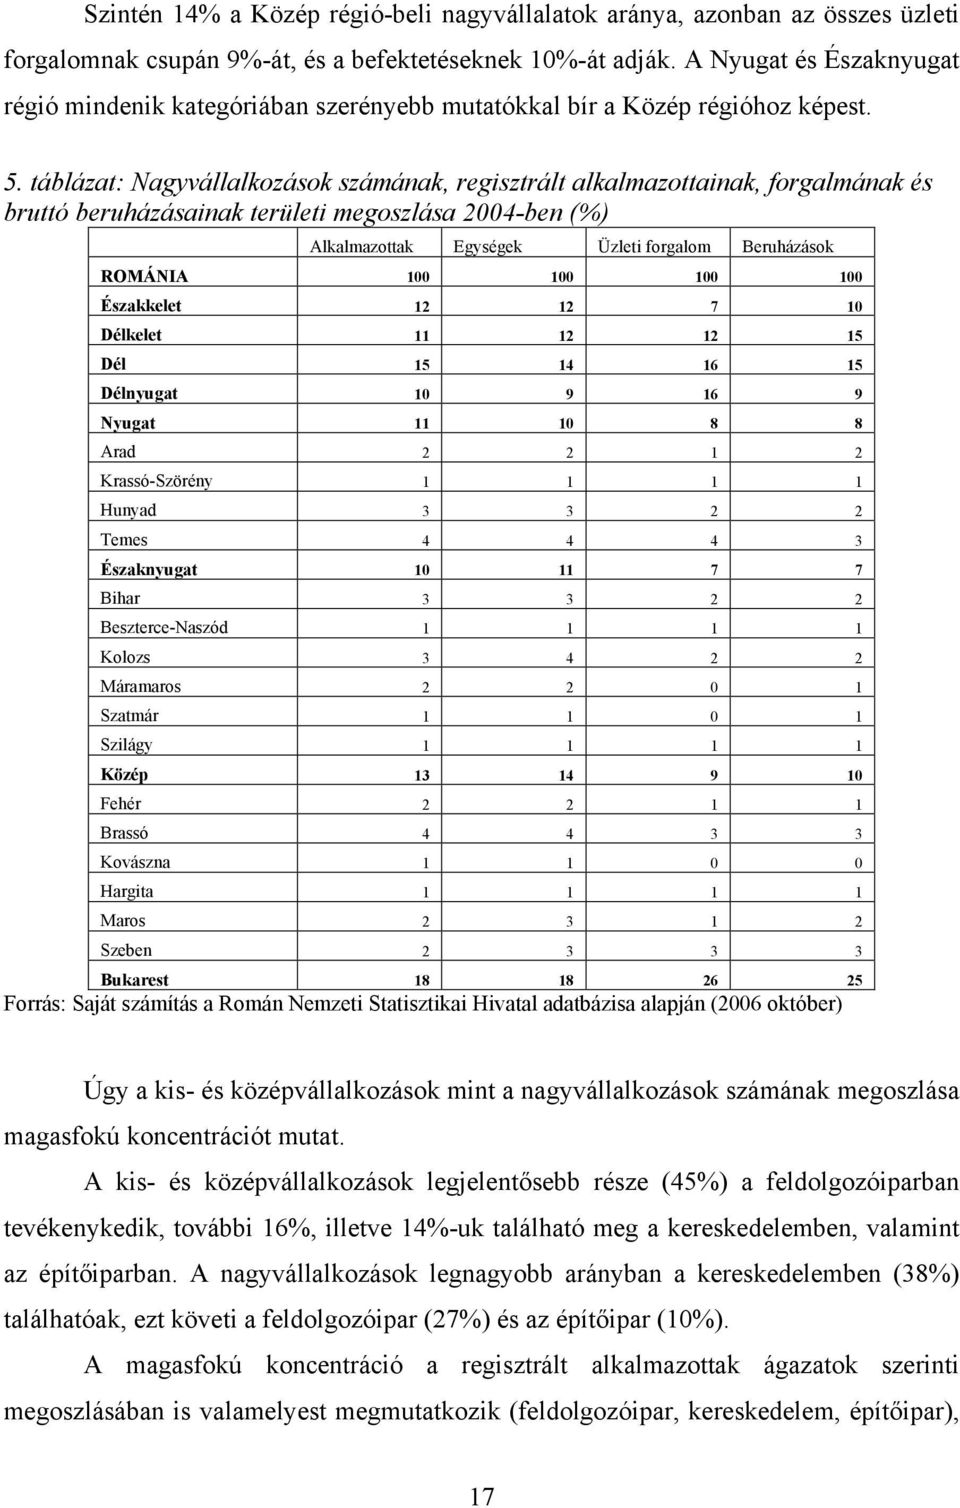 táblázat: Nagyvállalkozások számának, regisztrált alkalmazottainak, forgalmának és bruttó beruházásainak területi megoszlása 2004-ben (%) Alkalmazottak Egységek Üzleti forgalom Beruházások ROMÁNIA